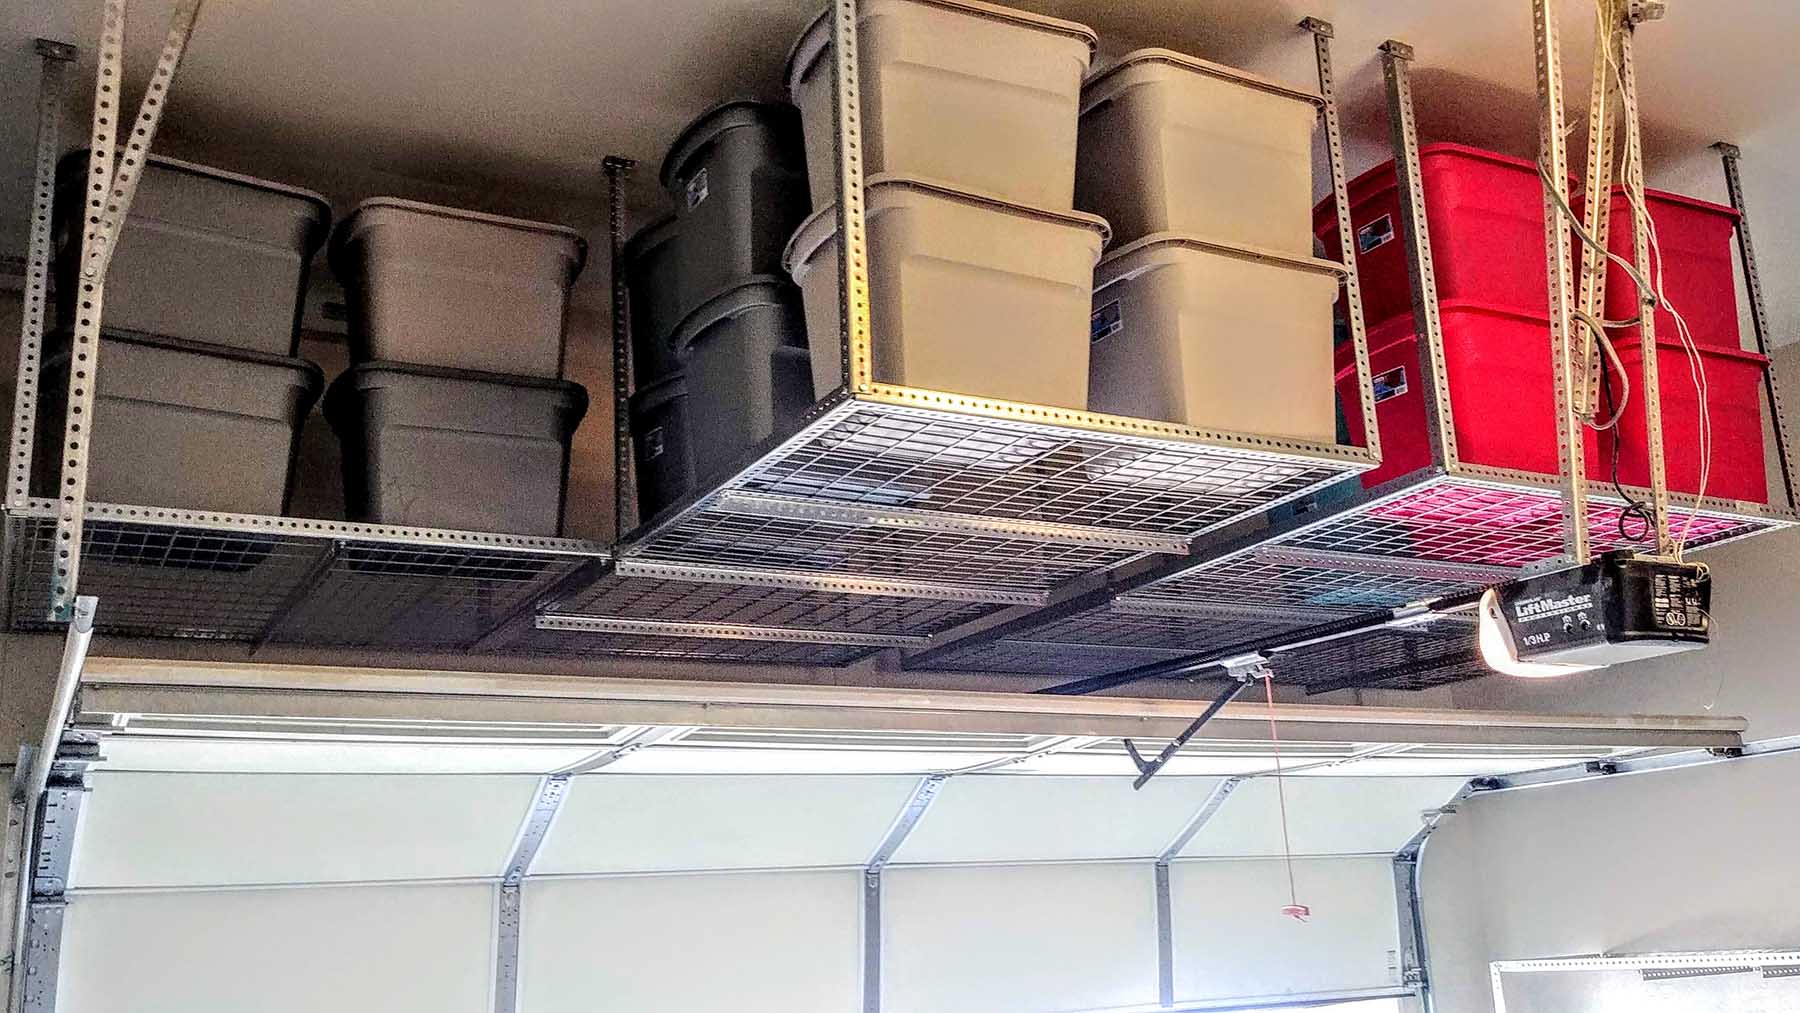 Storage over the garage door for massive space savings